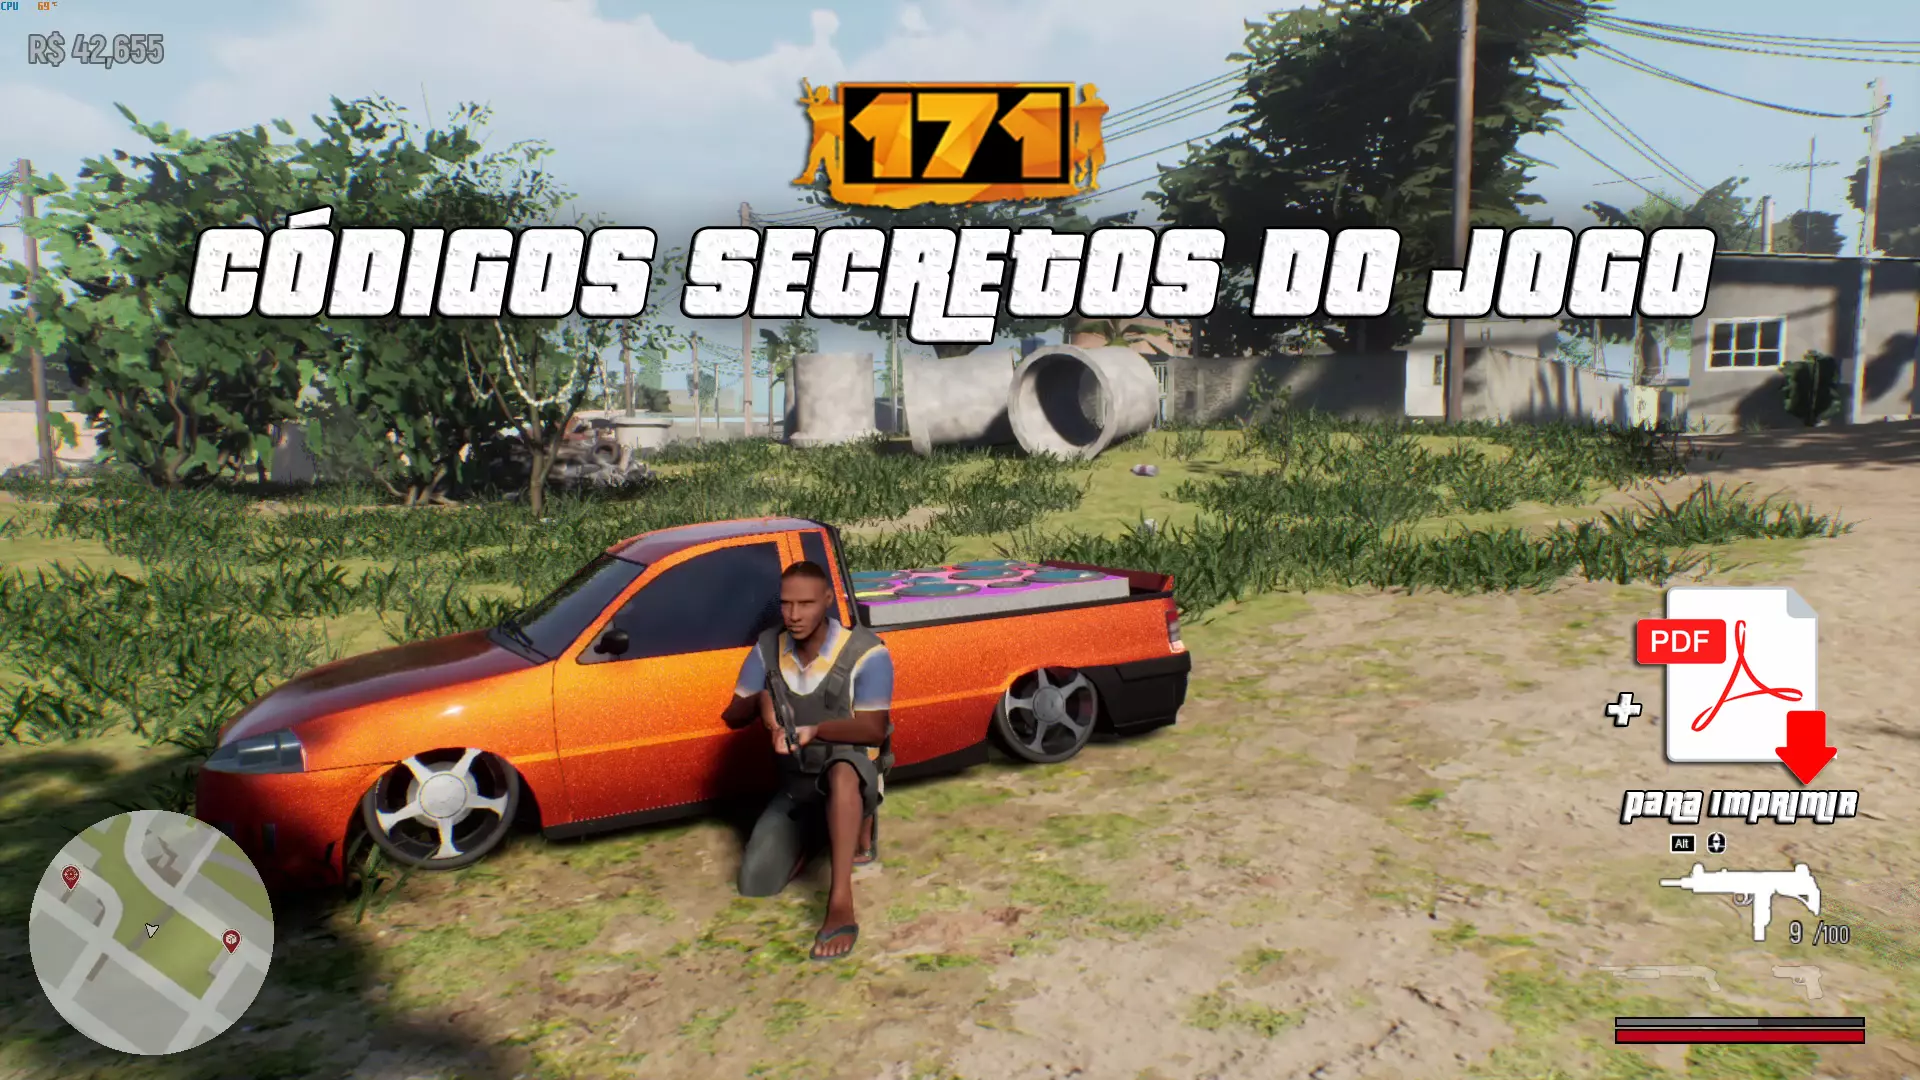 171, jogo conhecido como GTA brasileiro, fica disponível para